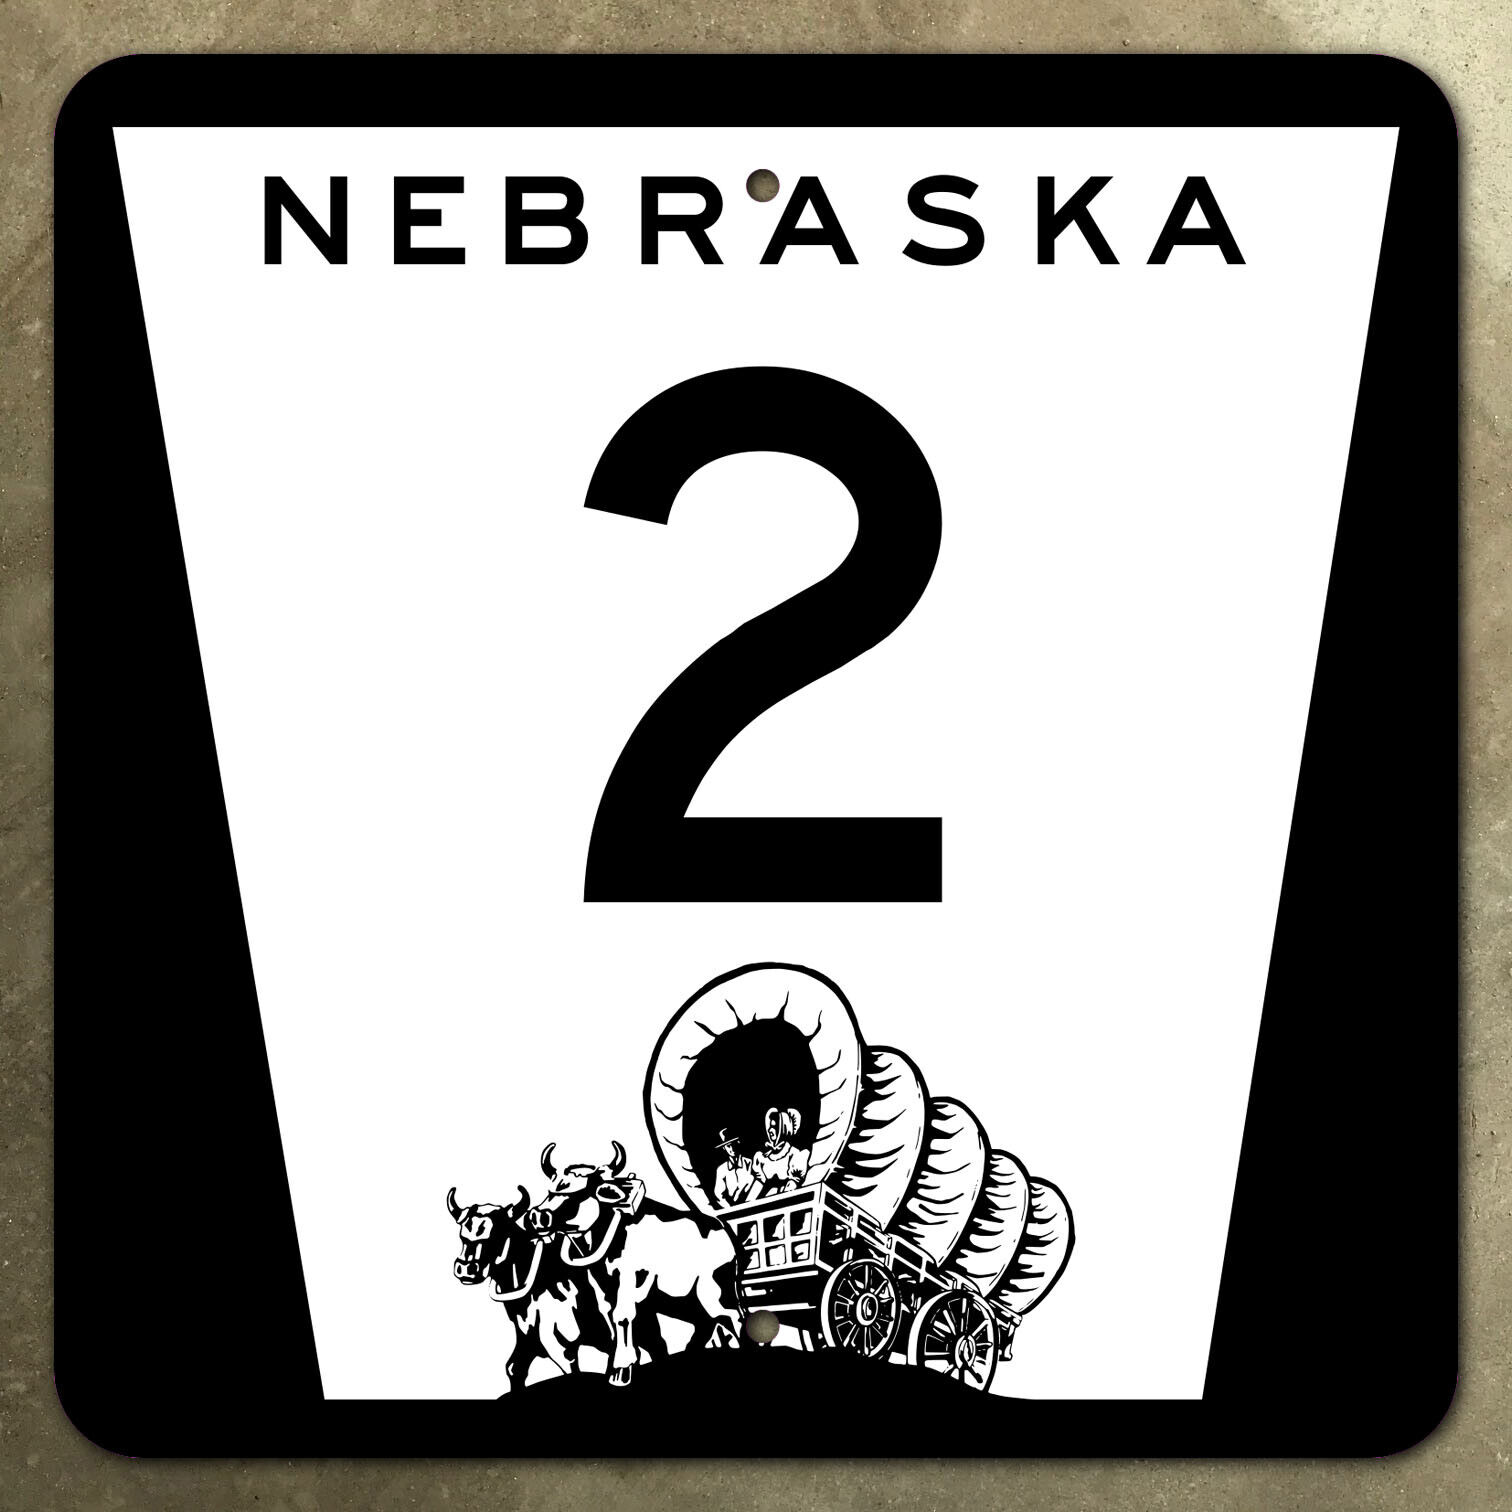 Nebraska route 2 highway marker road sign shield 1975 Conestoga wagon oxen 12\